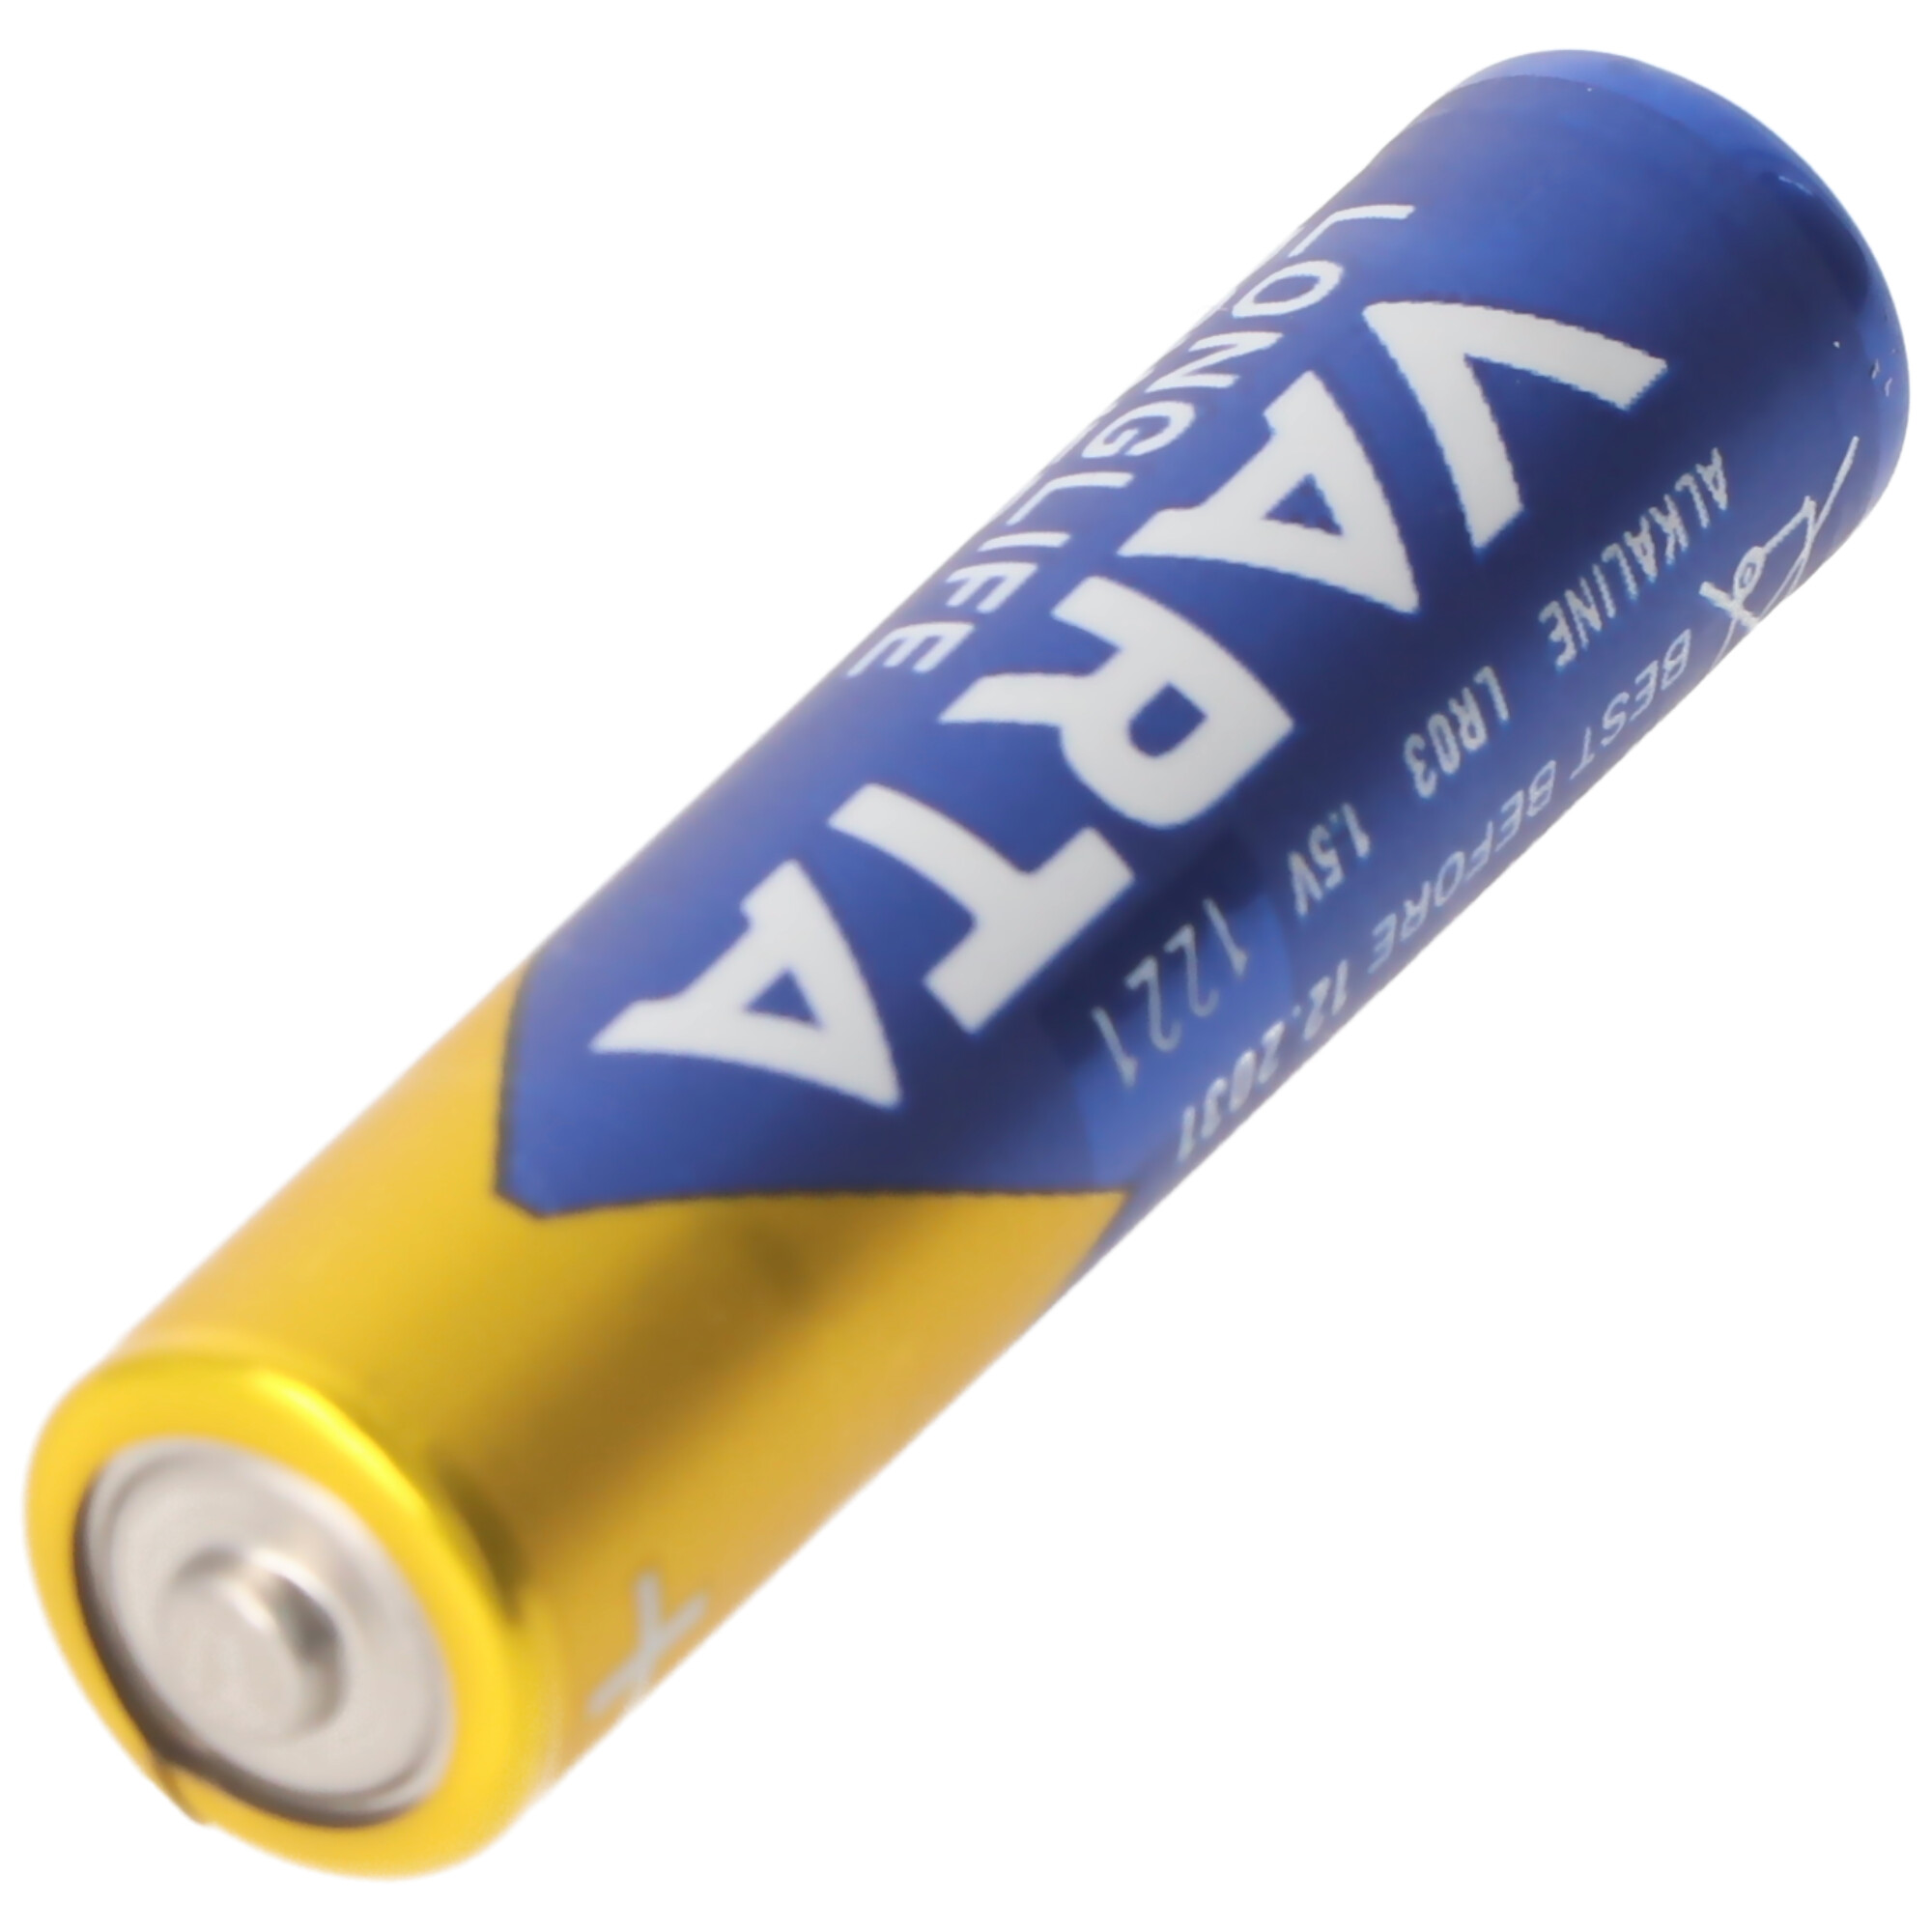 Varta Longlife Power (ehem. High Energy) Micro AAA 4903 Batterien 4er-Blisterkarte, Abmessungen 44,5x10,5mm